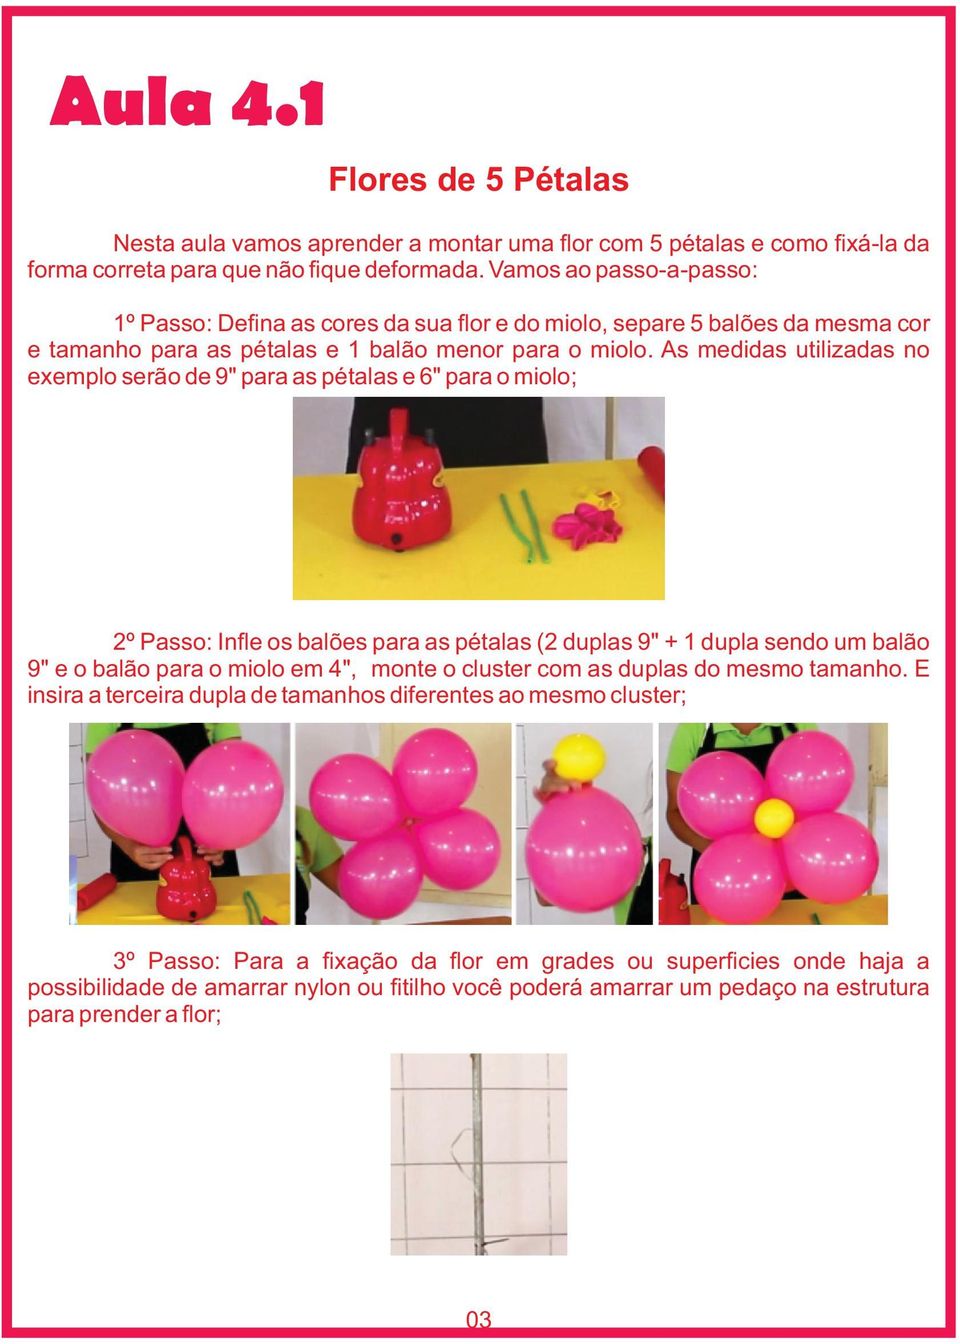 As medidas utilizadas no exemplo serão de 9" para as pétalas e 6" para o miolo; 2º Passo: Infle os balões para as pétalas (2 duplas 9" + 1 dupla sendo um balão 9" e o balão para o miolo em 4", monte